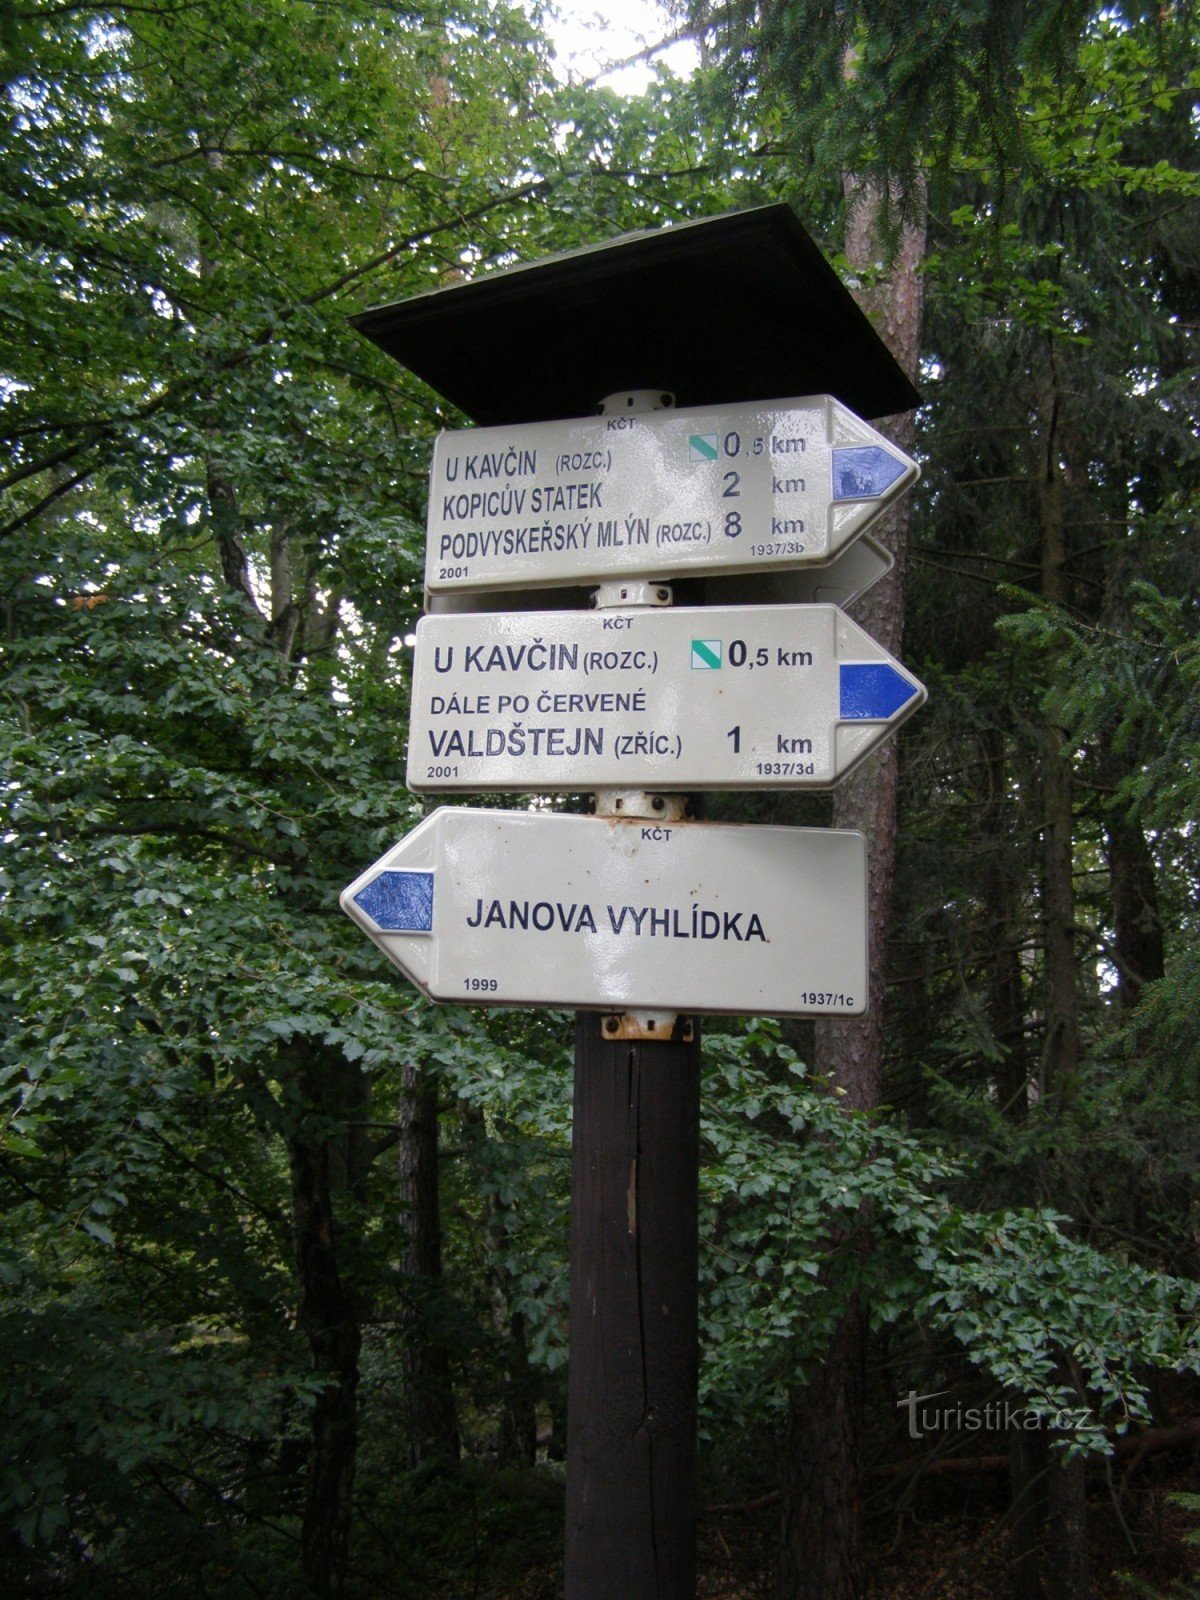 τουριστικό σταυροδρόμι στην άποψη Janova